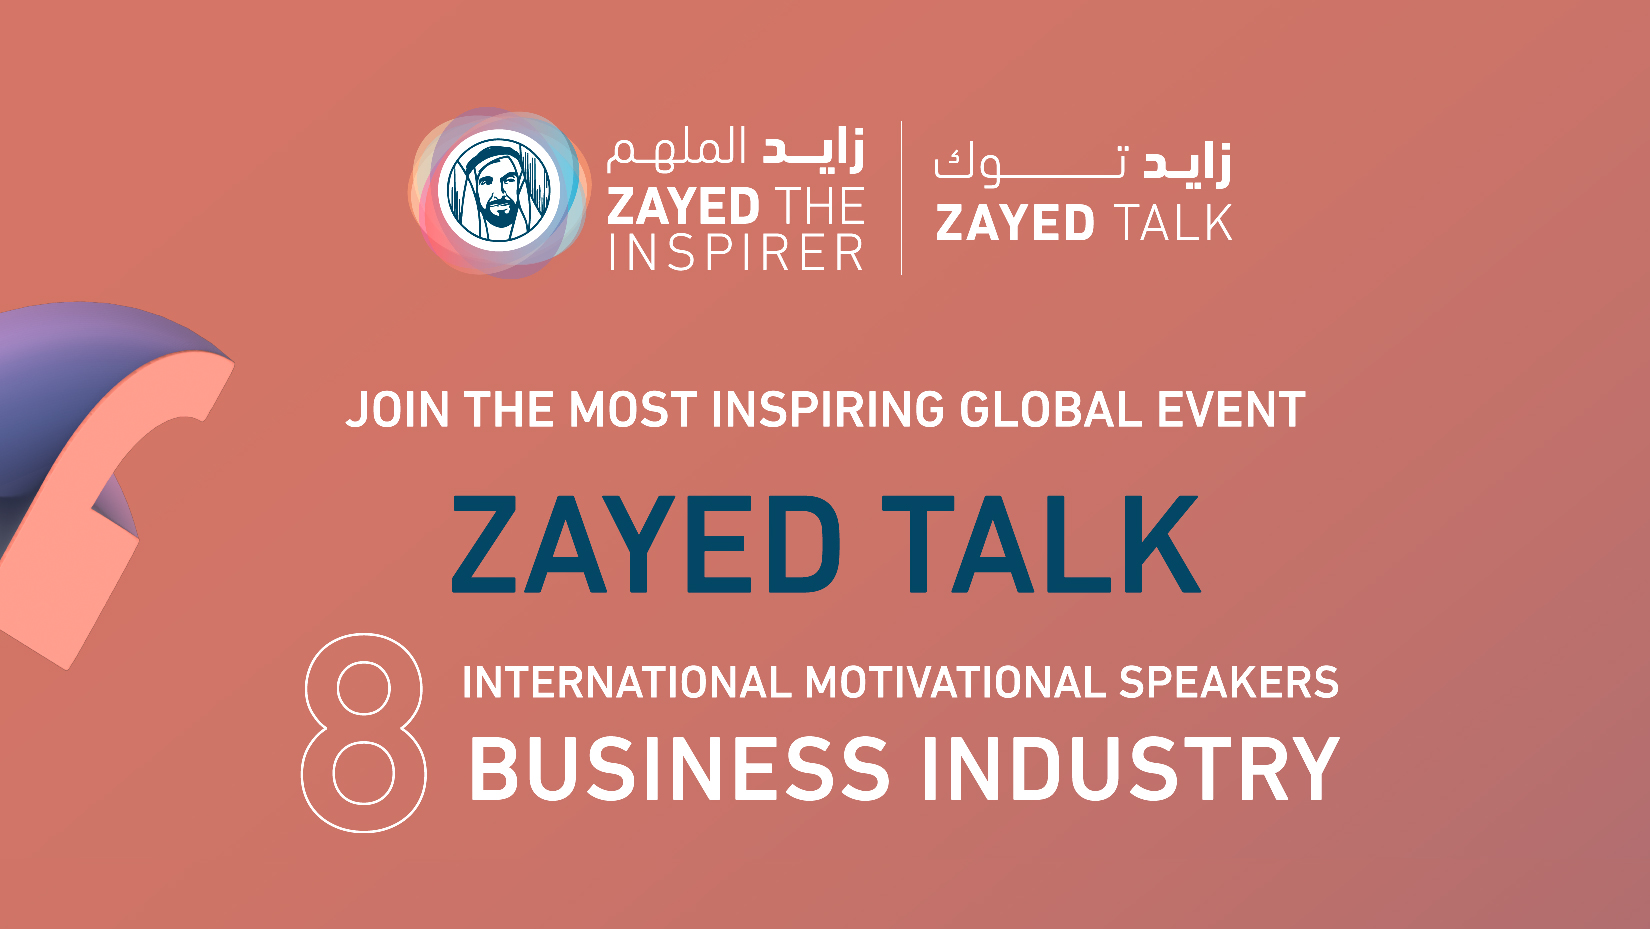 'Zayed The Inspirer' Platform holds Zayed Talk